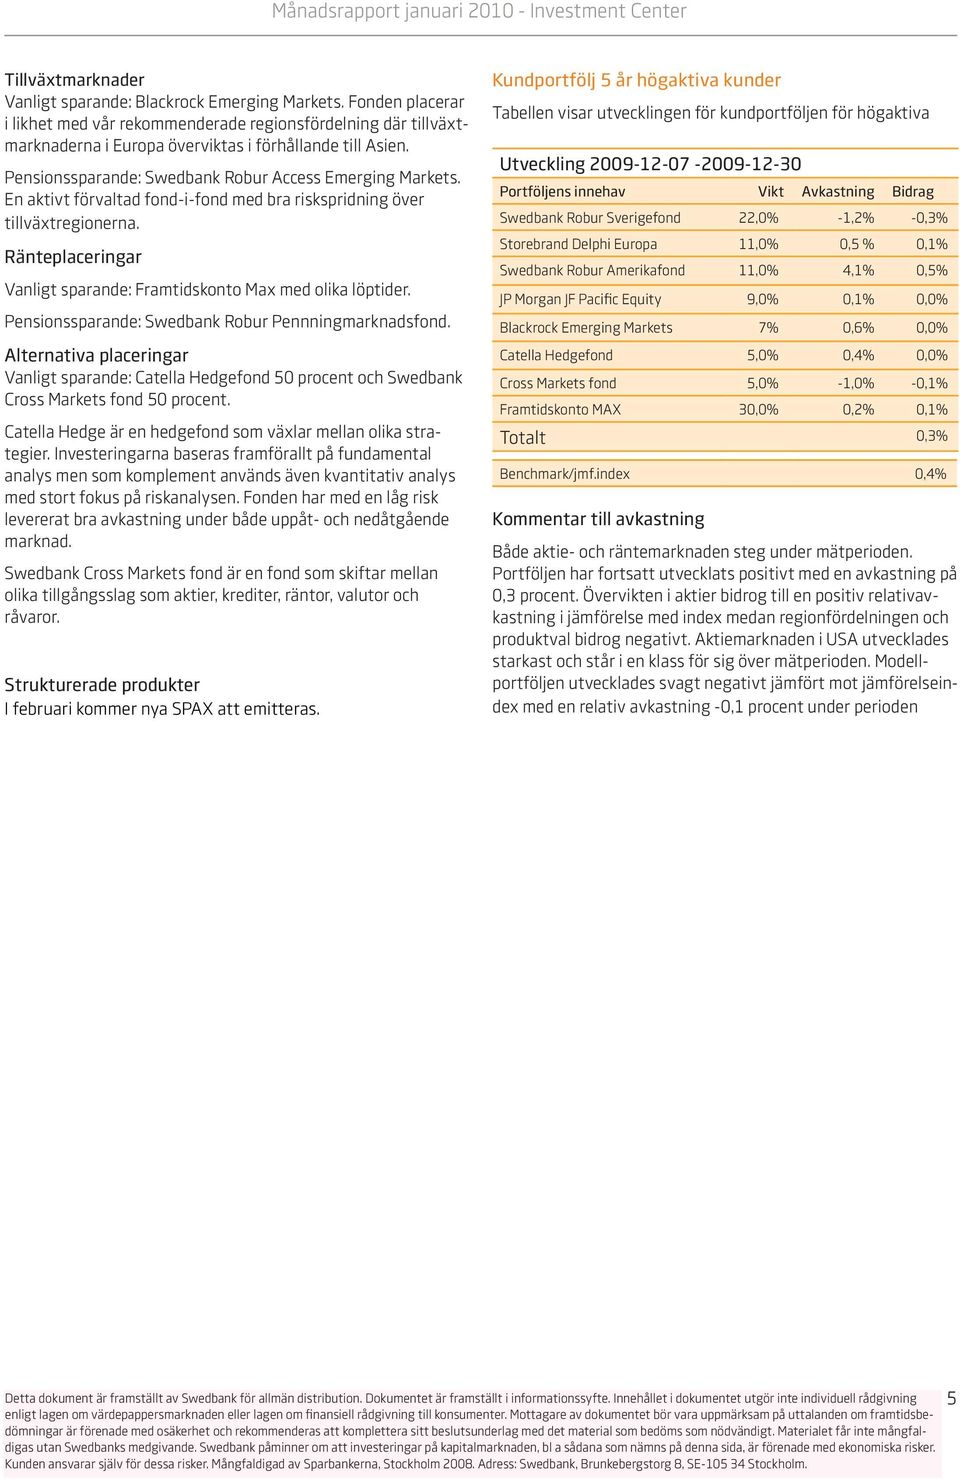 Ränteplaceringar Vanligt sparande: Framtidskonto Max med olika löptider. Pensionssparande: Swedbank Robur Pennningmarknadsfond.